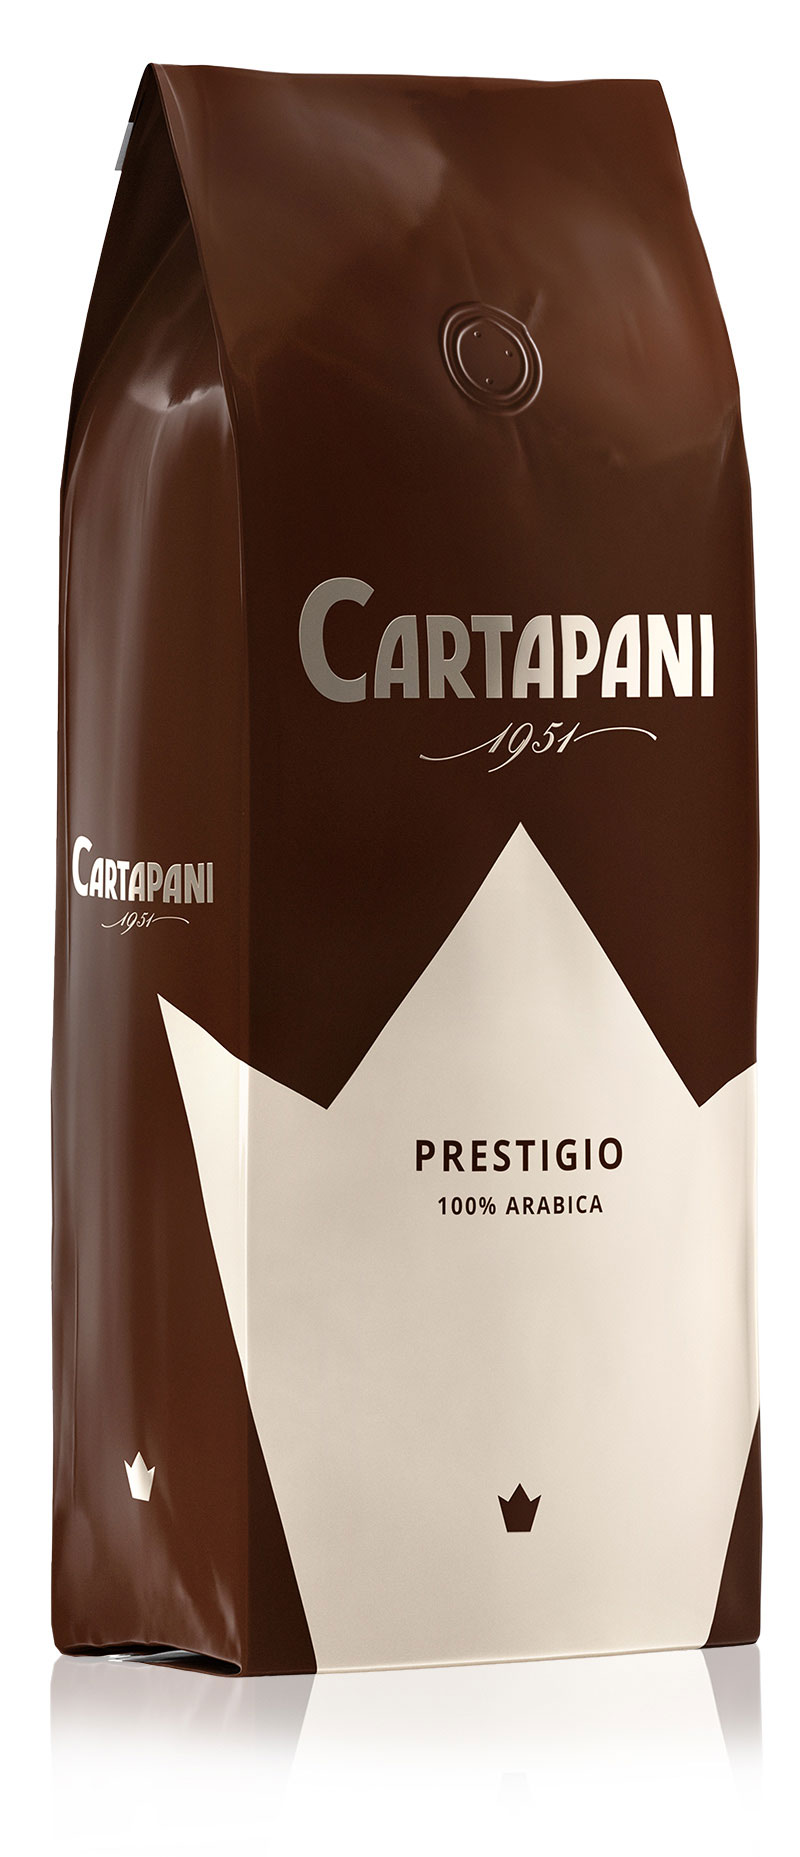 PRESTIGIO - Cartapani